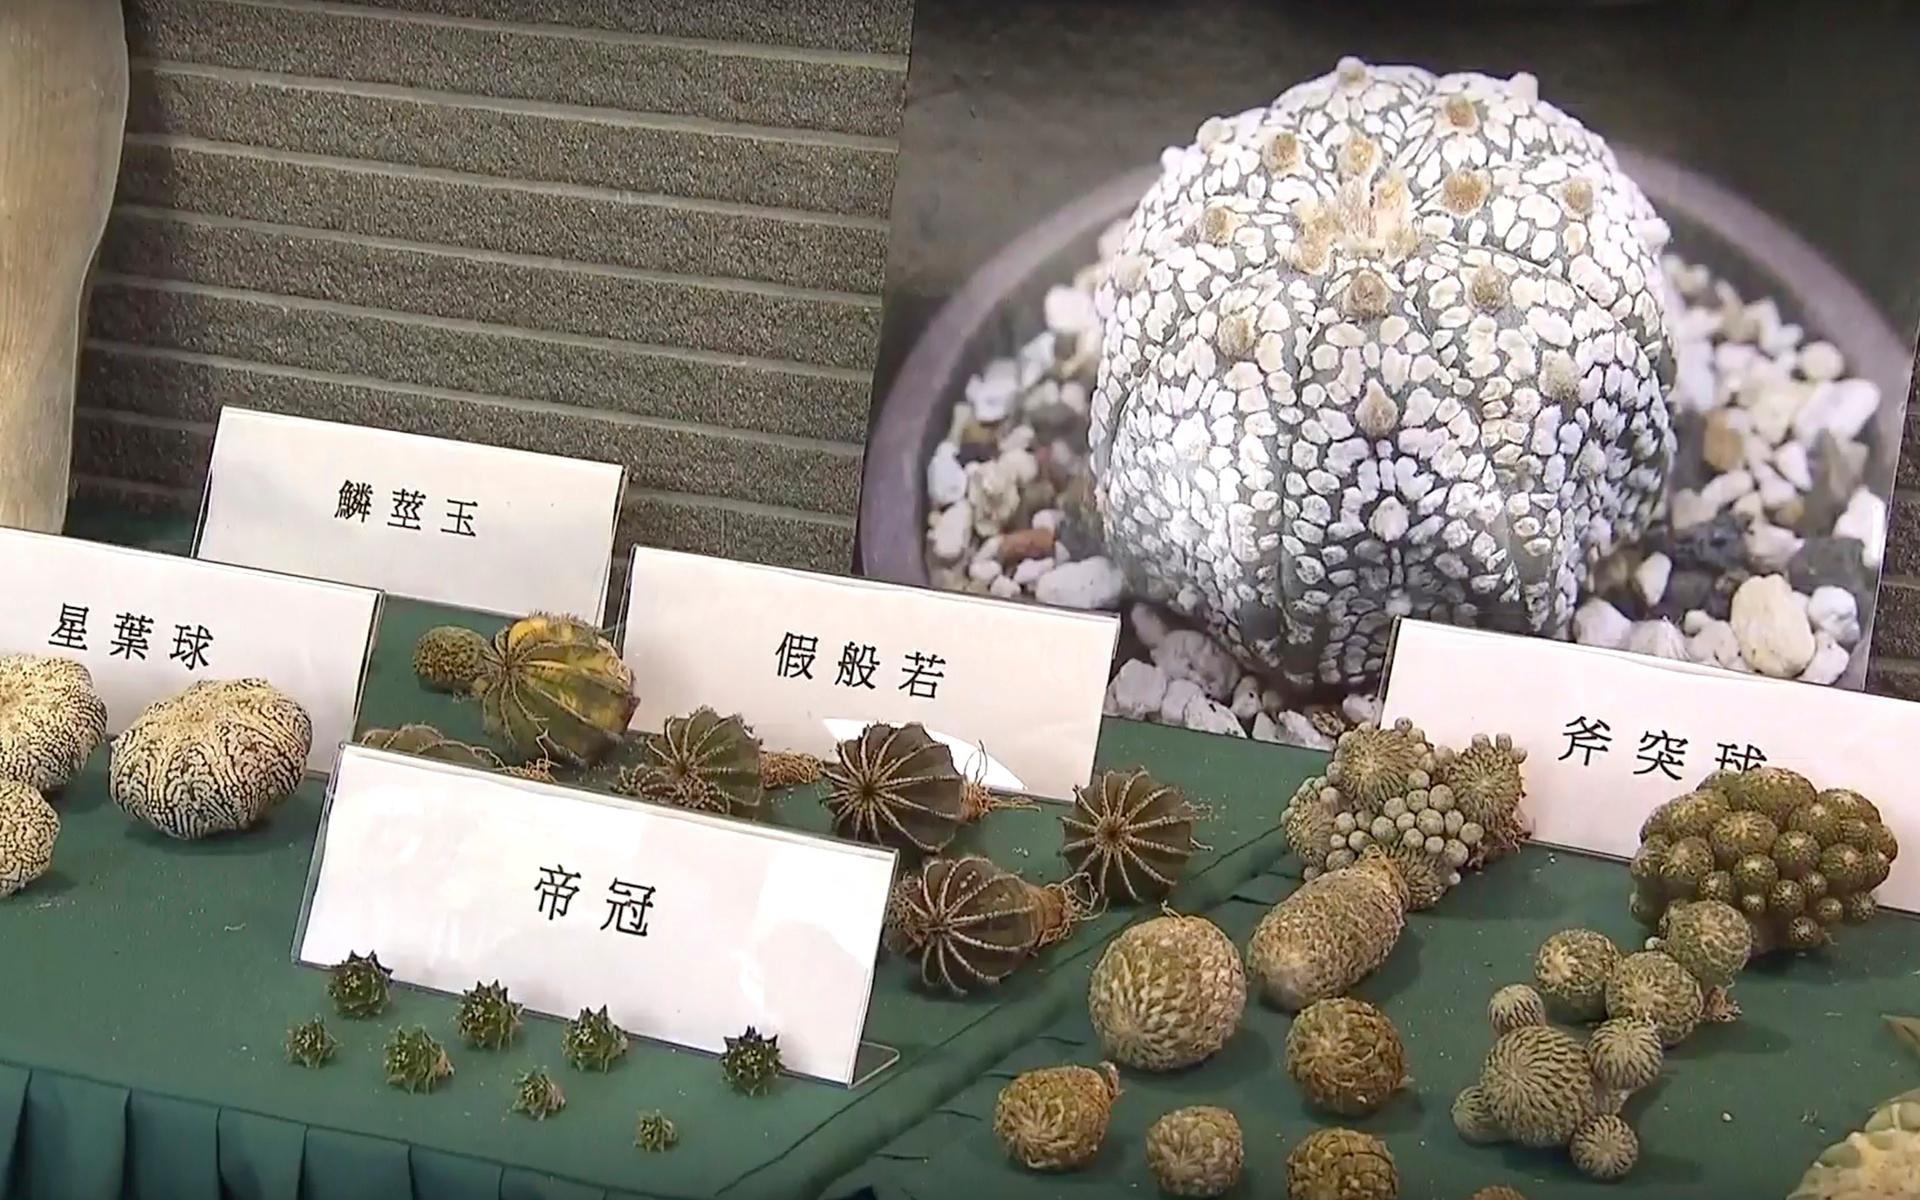 Under en presskonferens på torsdagen visade myndigheterna upp vissa av de smuggelvaror man beslagtagit. Bland annat hittades hotade växter bland smuggelgodset.